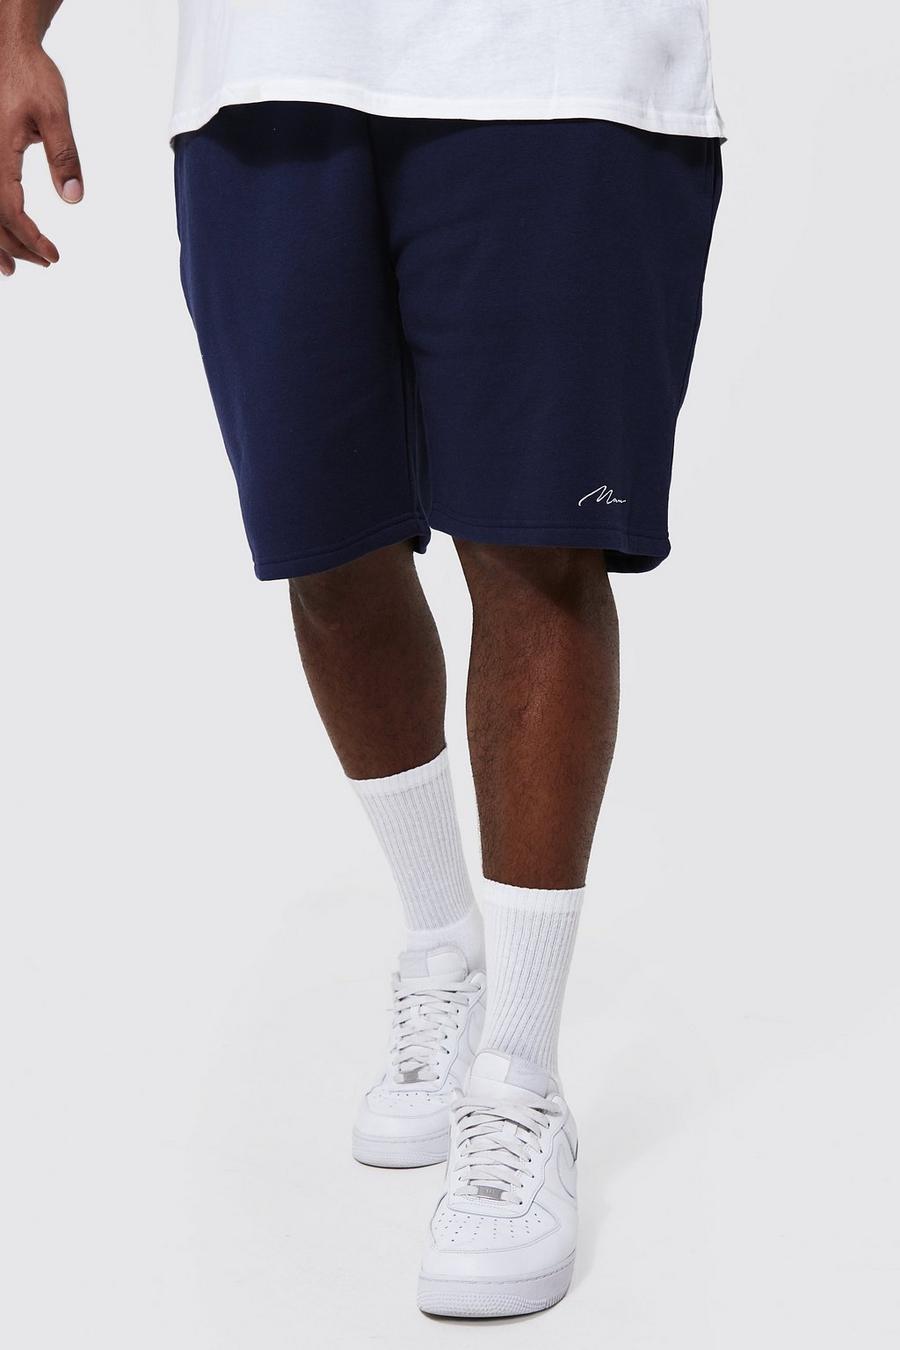 Pantalón corto Plus MAN de tela jersey y largo medio con algodón ecológico, Navy azul marino